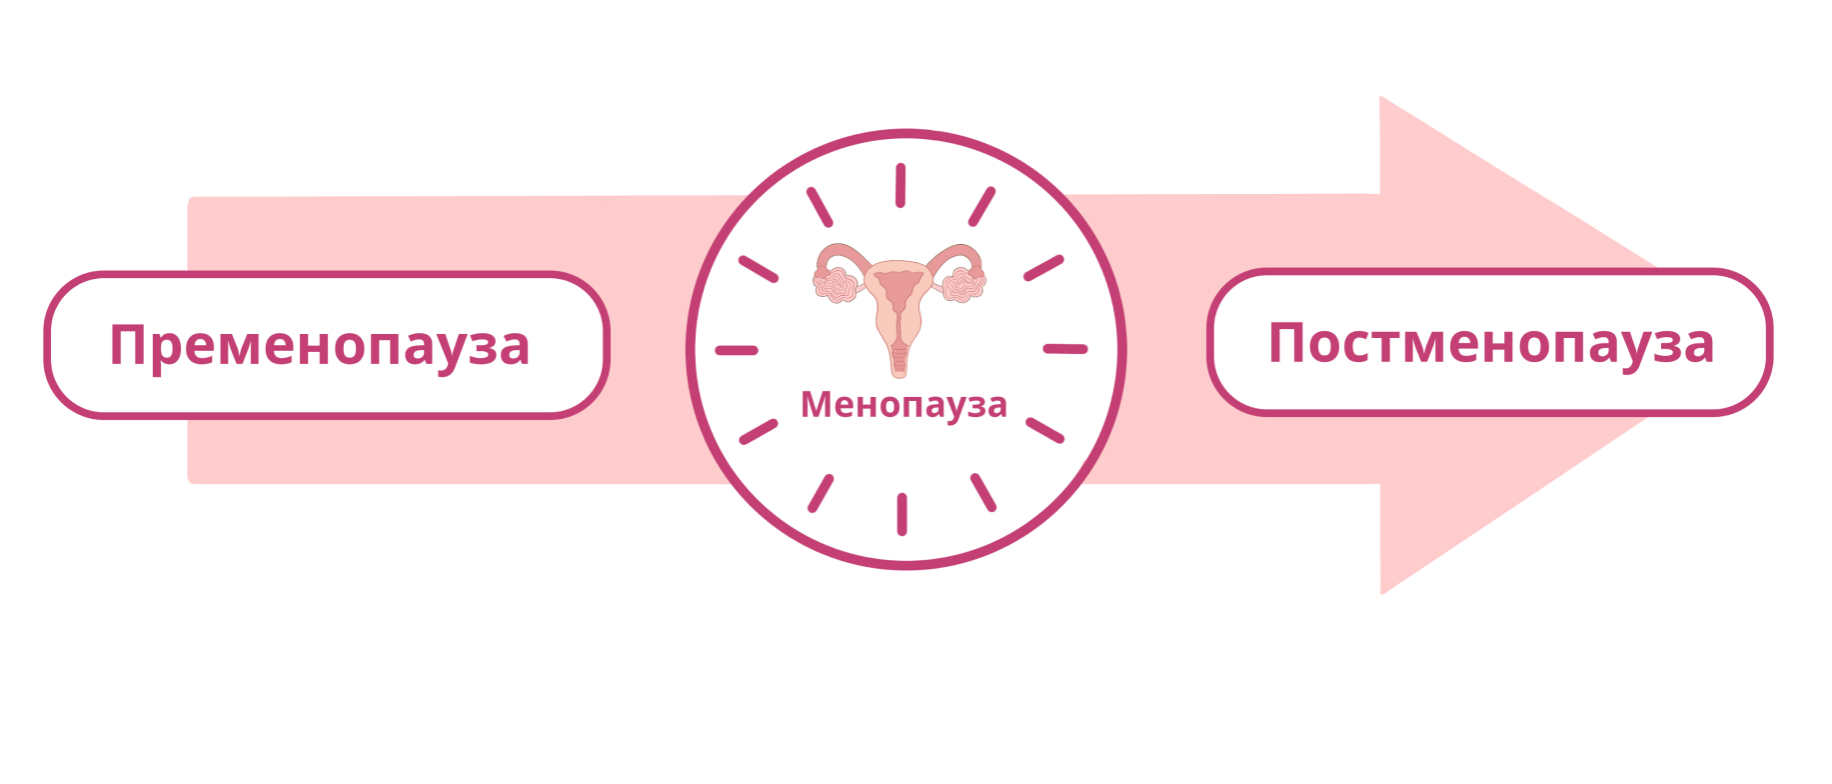 Этапы менопаузы. Фазы климактерического периода у женщин. Стадии климакса. Стадии кли Акса.